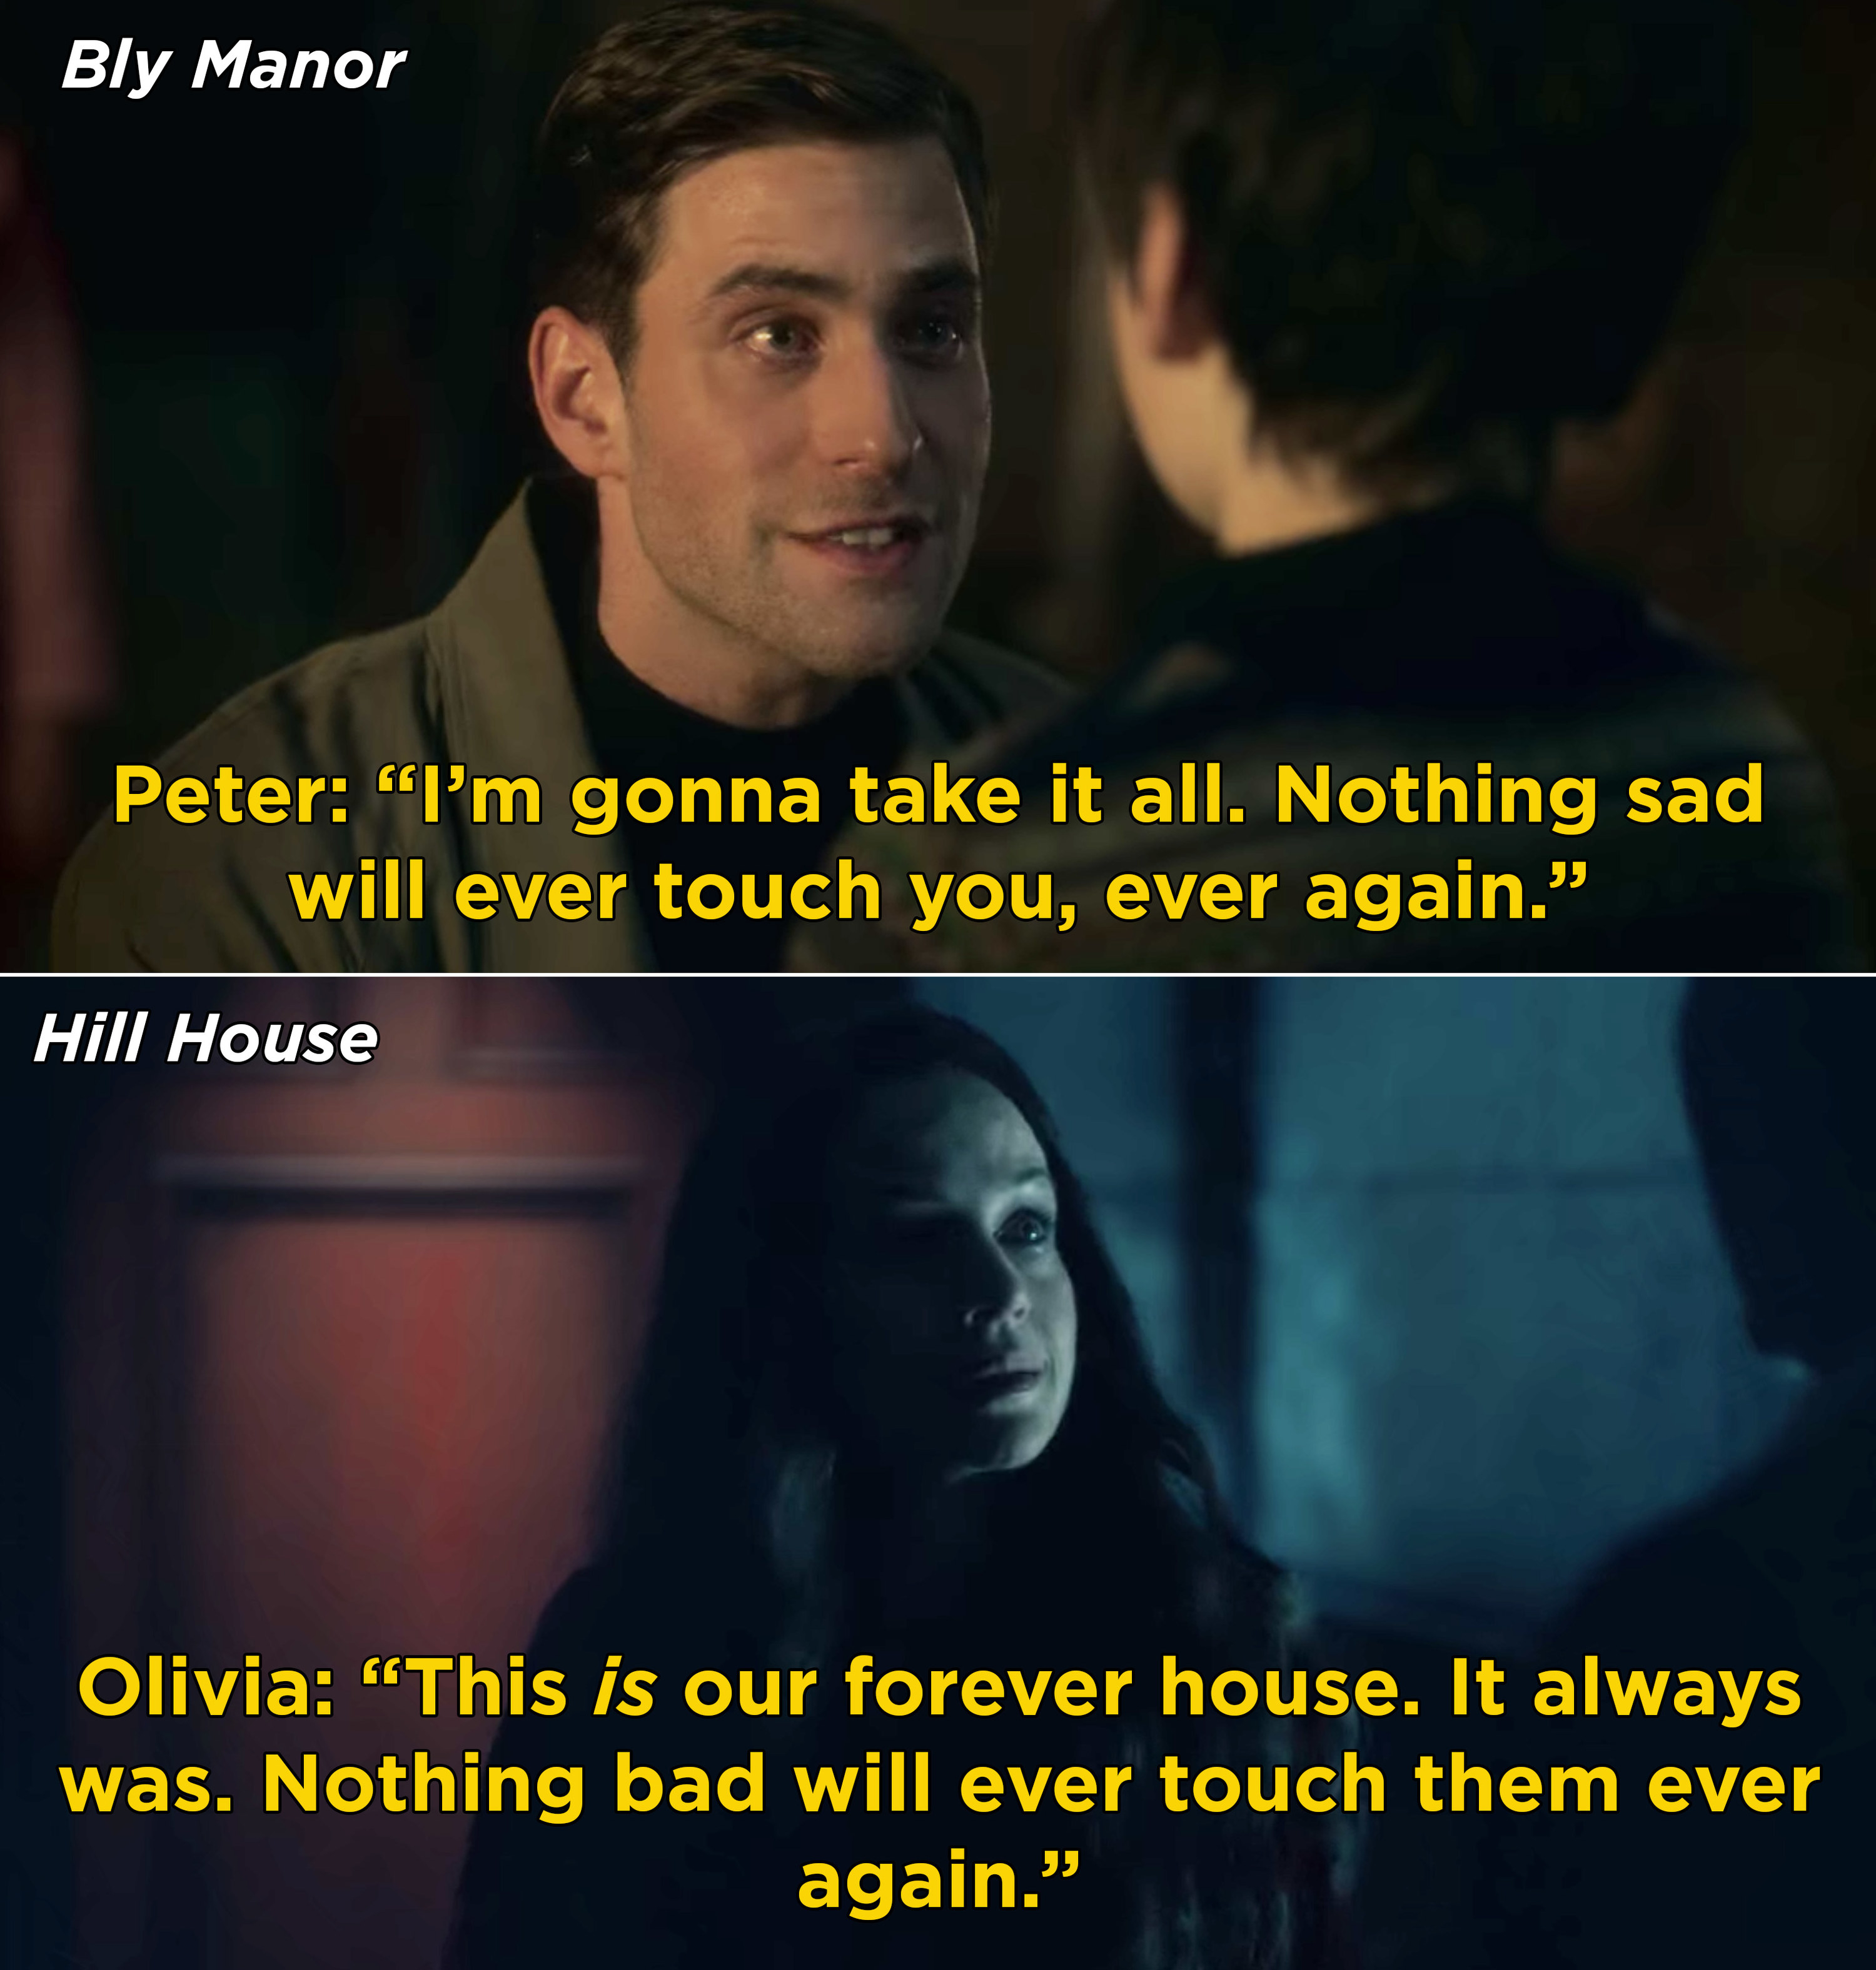 彼得告诉奈尔斯,“没有悲伤永远不会碰你,曾经again"和奥利维亚说“没有坏会摸他们曾经again"